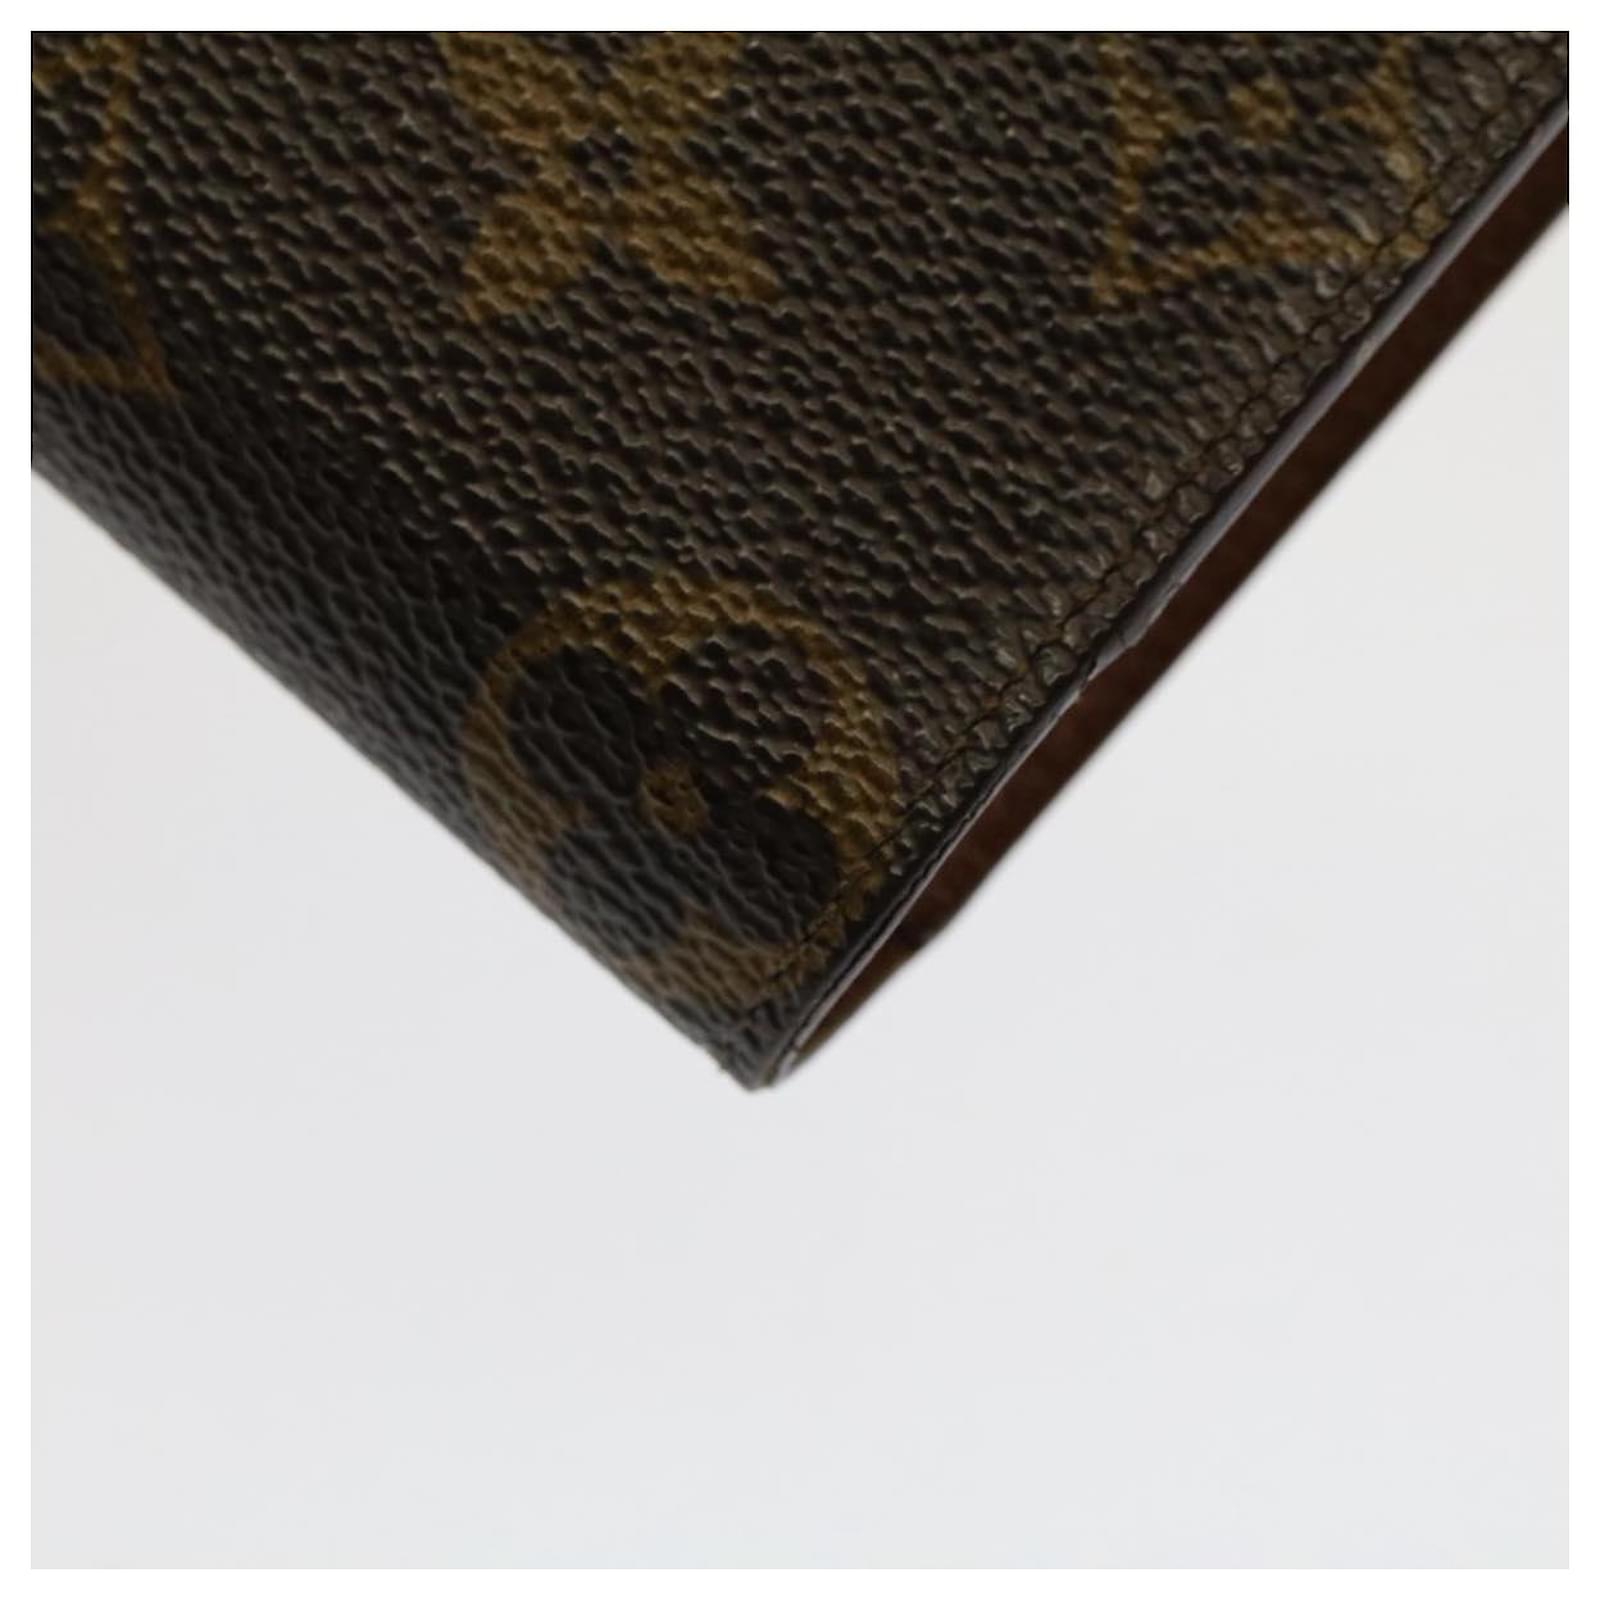 Louis Vuitton Monogram Continental Long Wallet T61217 LV Auth 39929